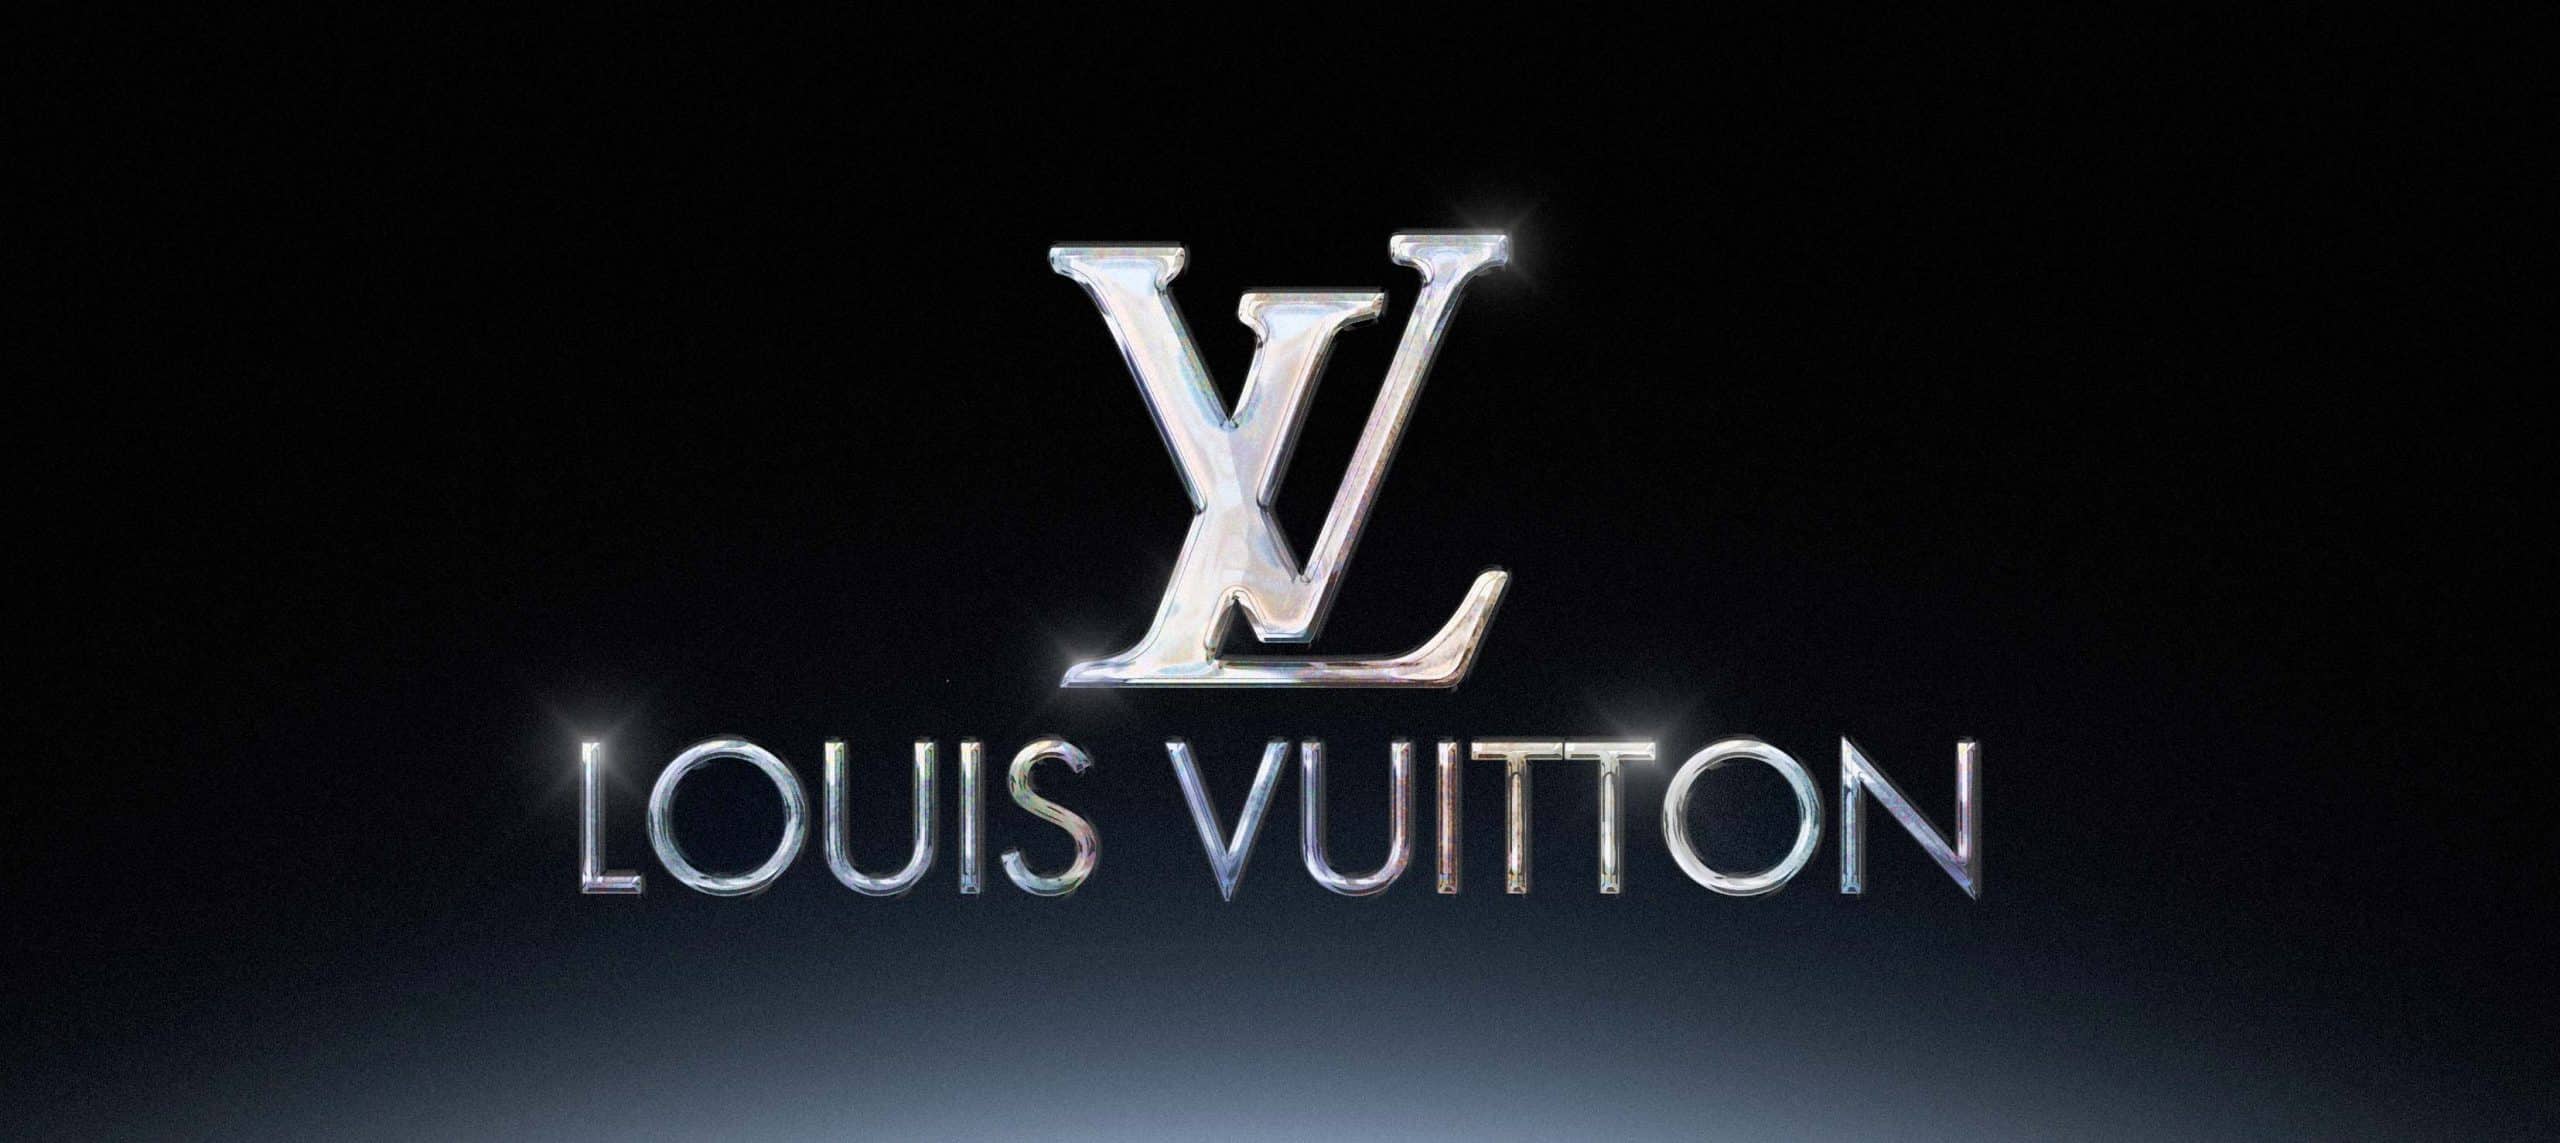 Comment Louis Vuitton communiqué ?